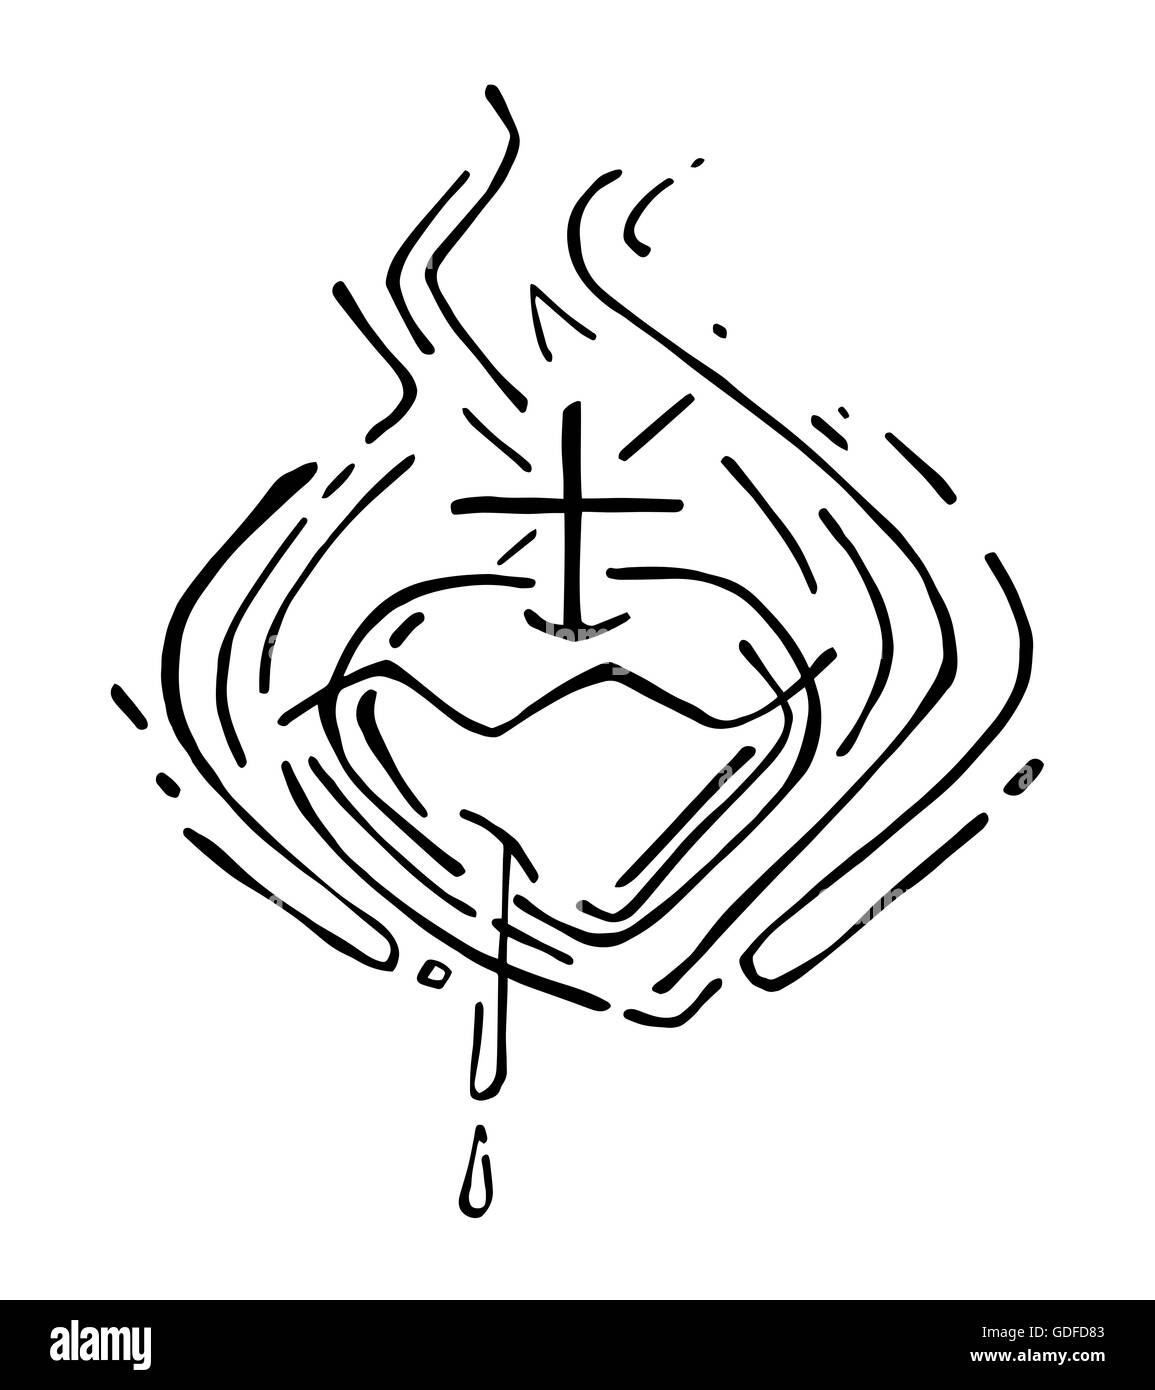 Sacred heart jesus illustration fotografías e imágenes de alta resolución -  Alamy